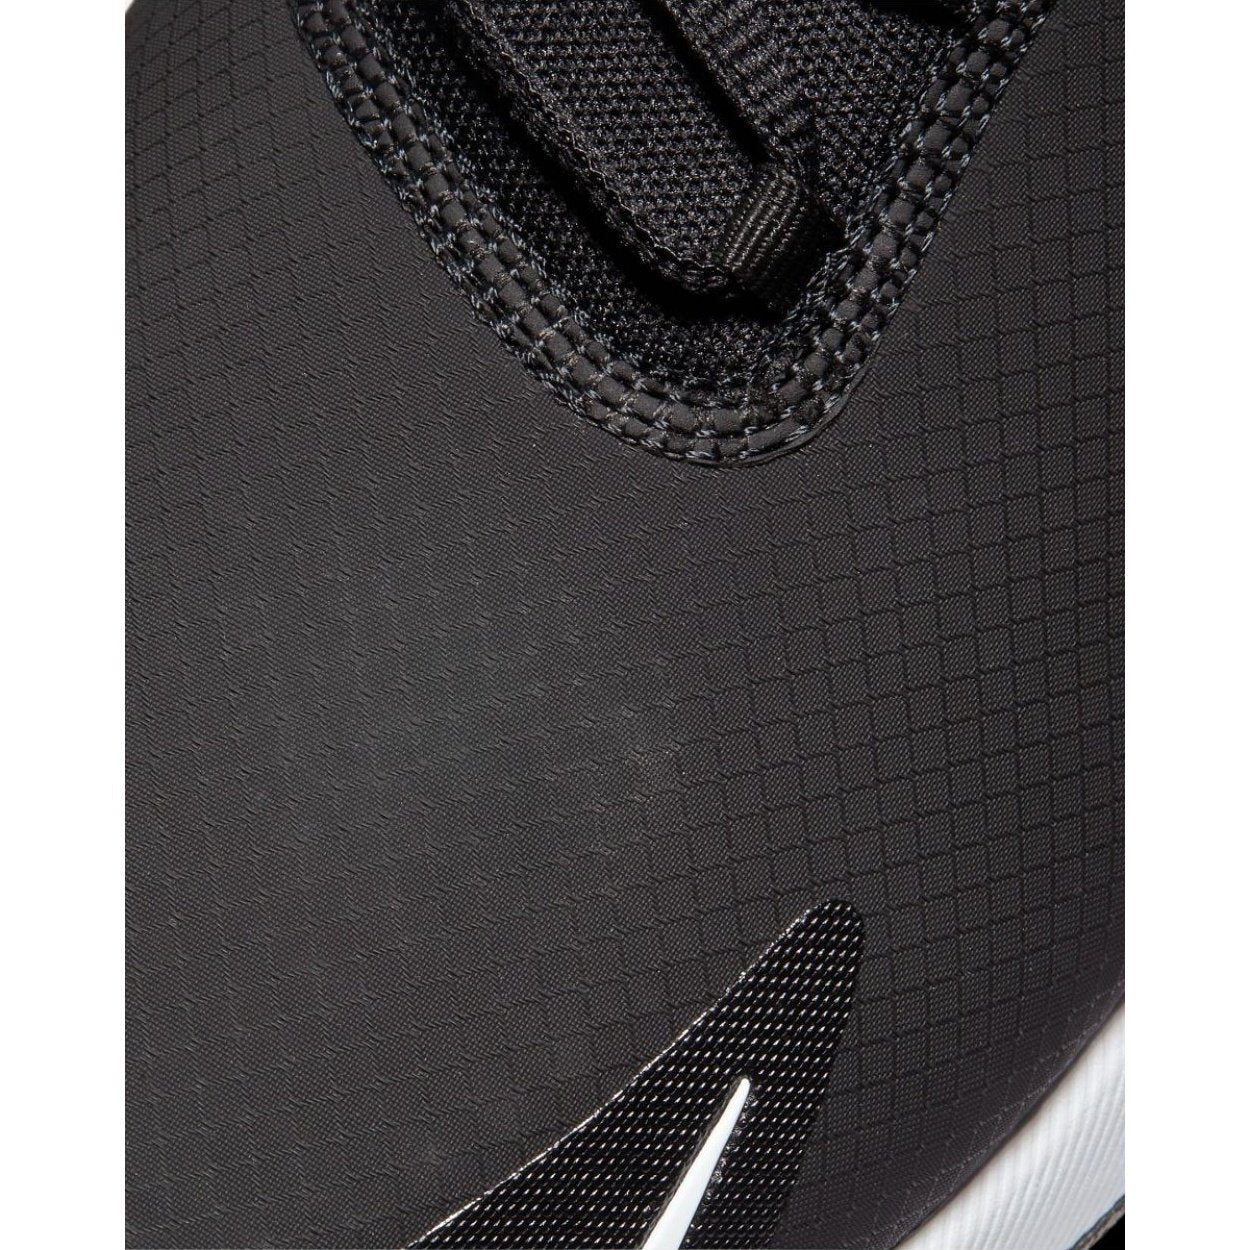 Nike Air Max 270G Golf Shoes CK6483